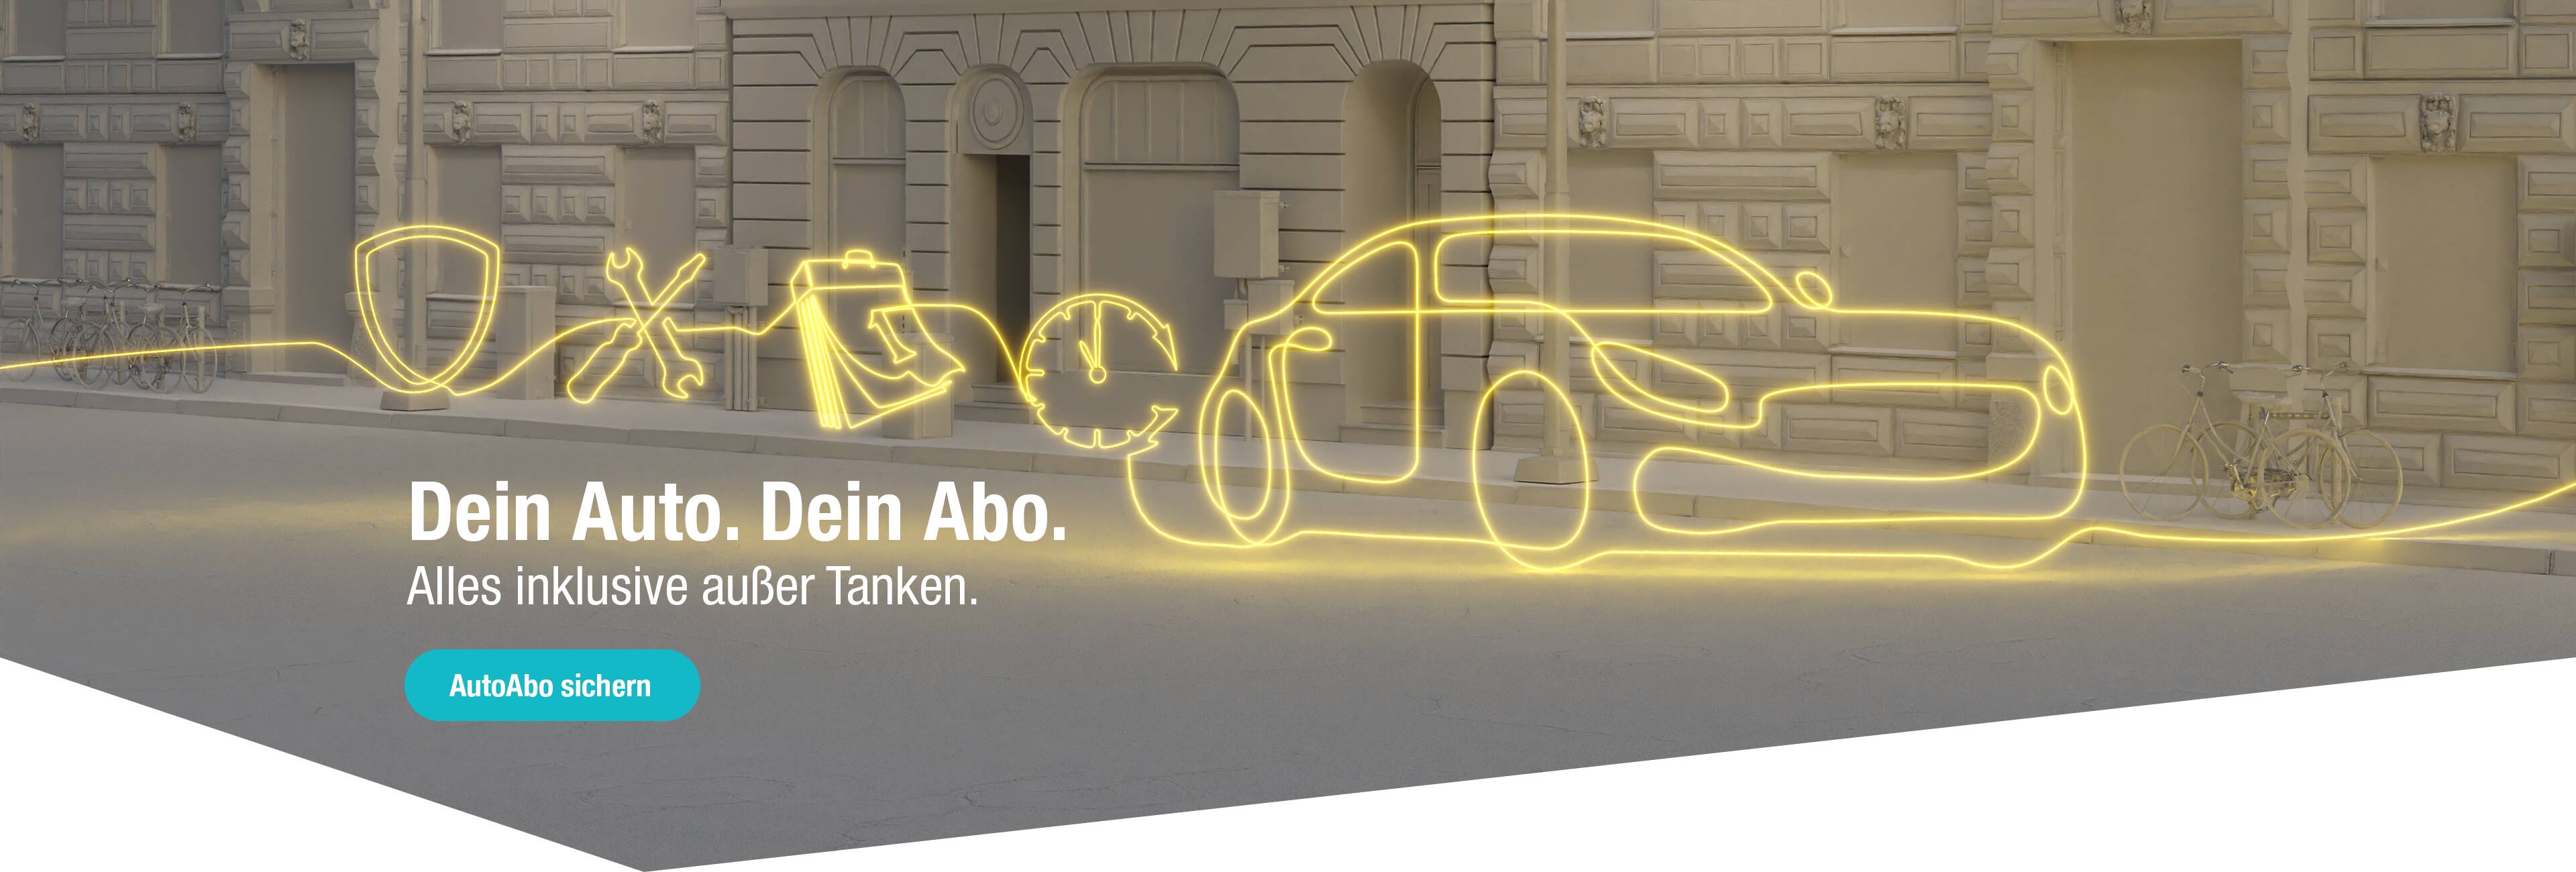 Die Illustration eines Autos mit Versicherung-, Kalender- und Reparatur-Icons symbolisiert das Auto Abo inklusive Leistungen.